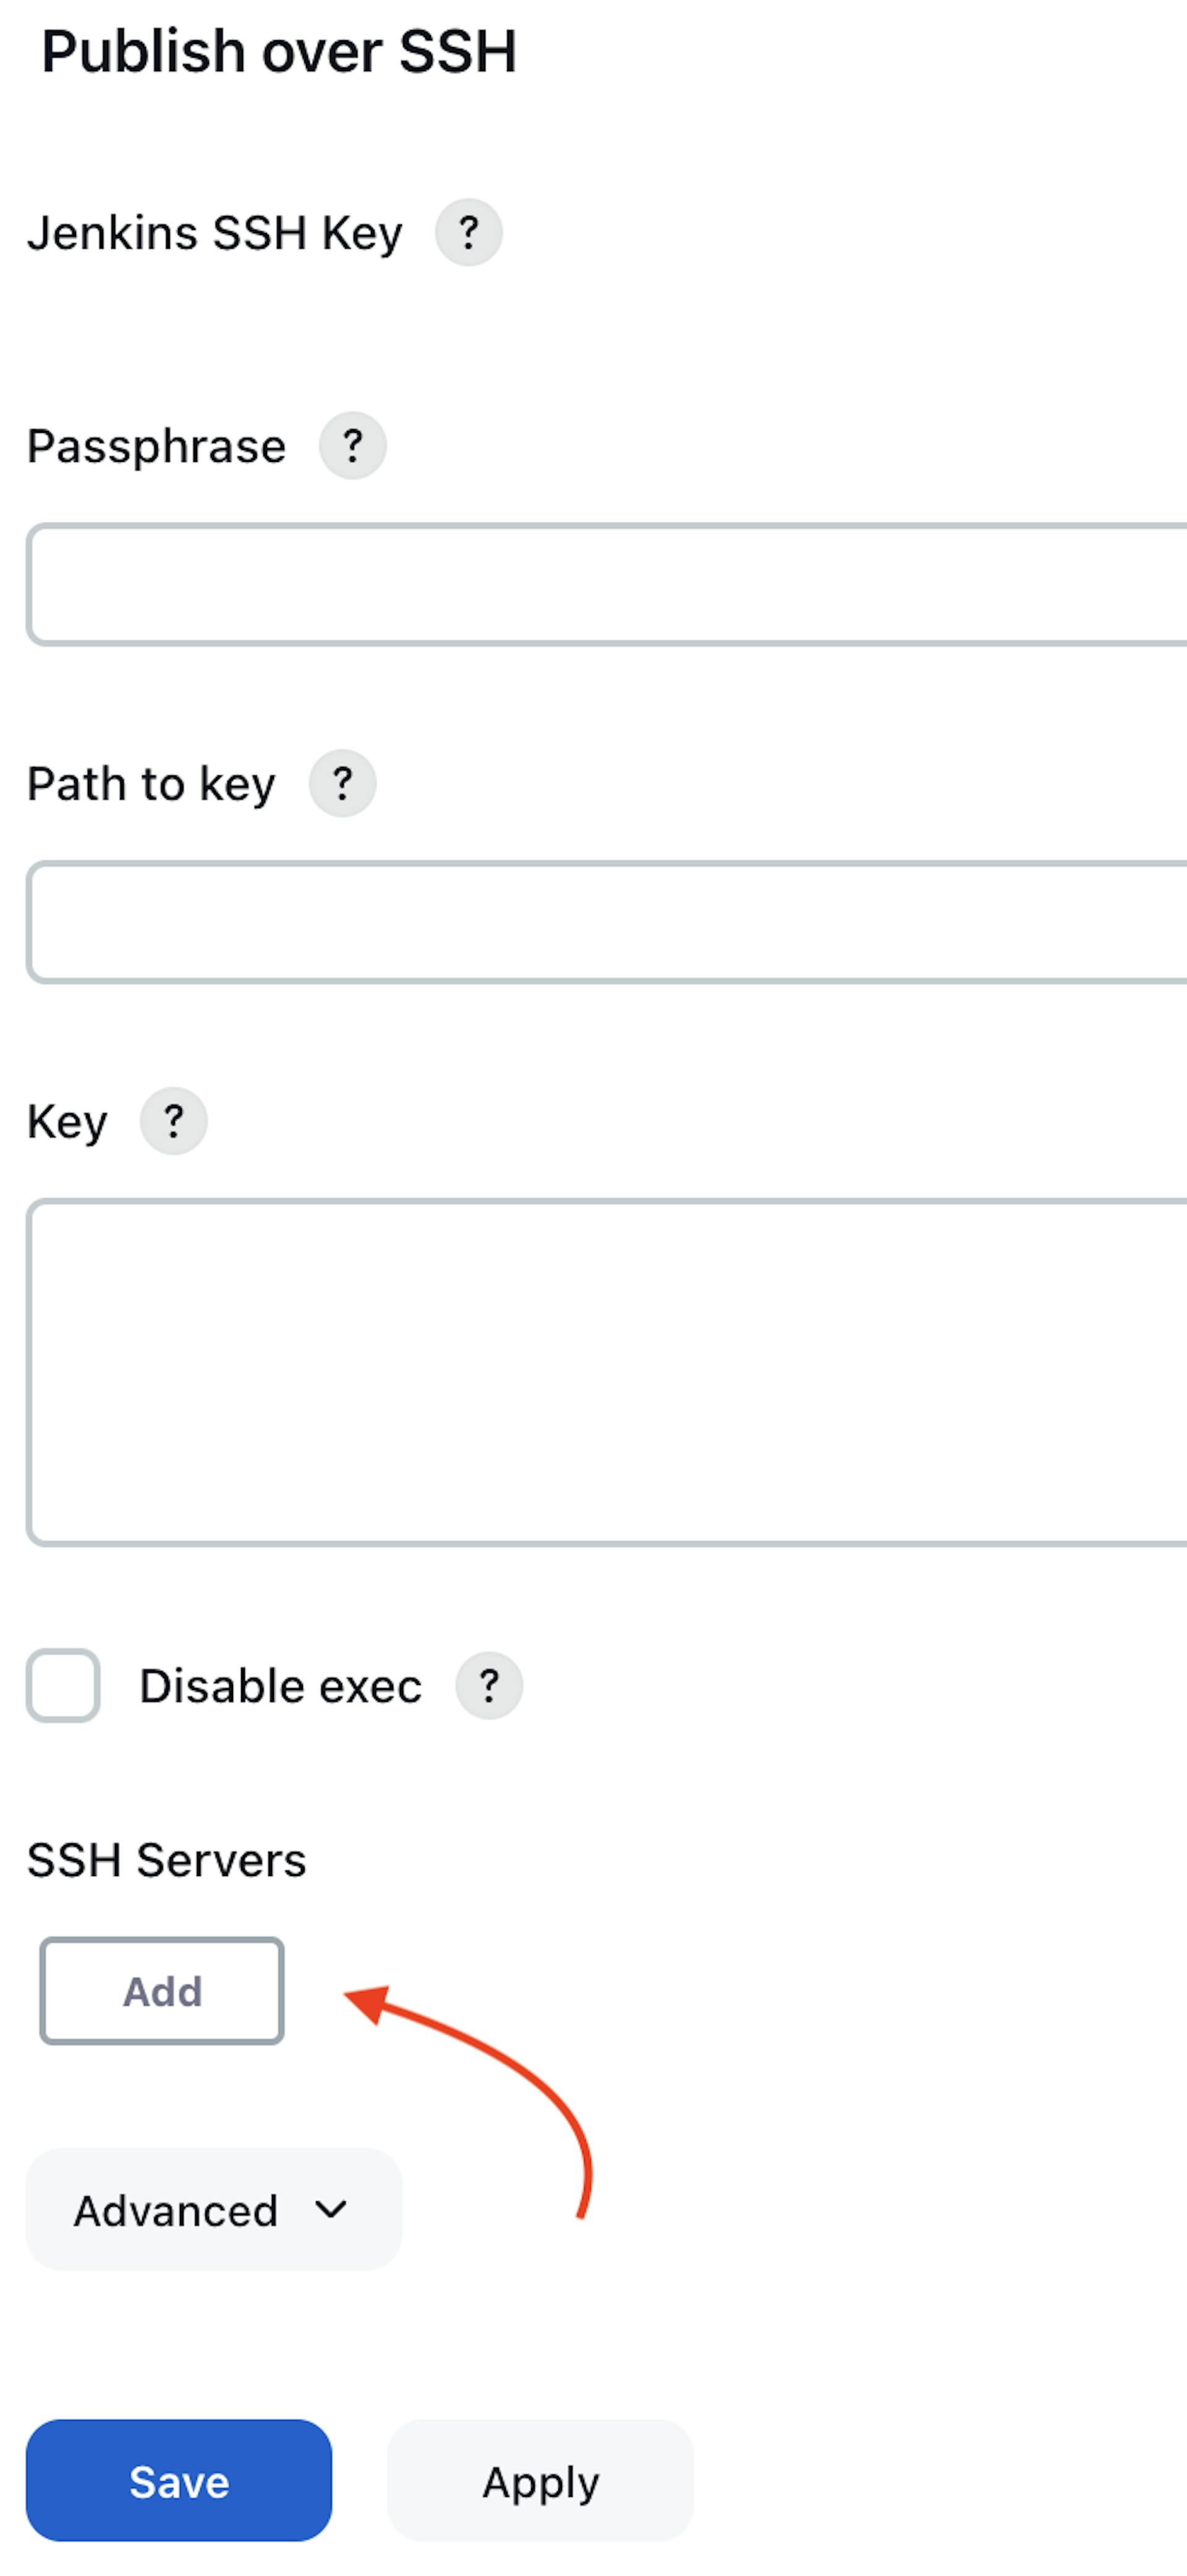 Снимок экрана терминала экземпляра виртуального сервера AWS EC2 с плагином «Публикация через SSH».